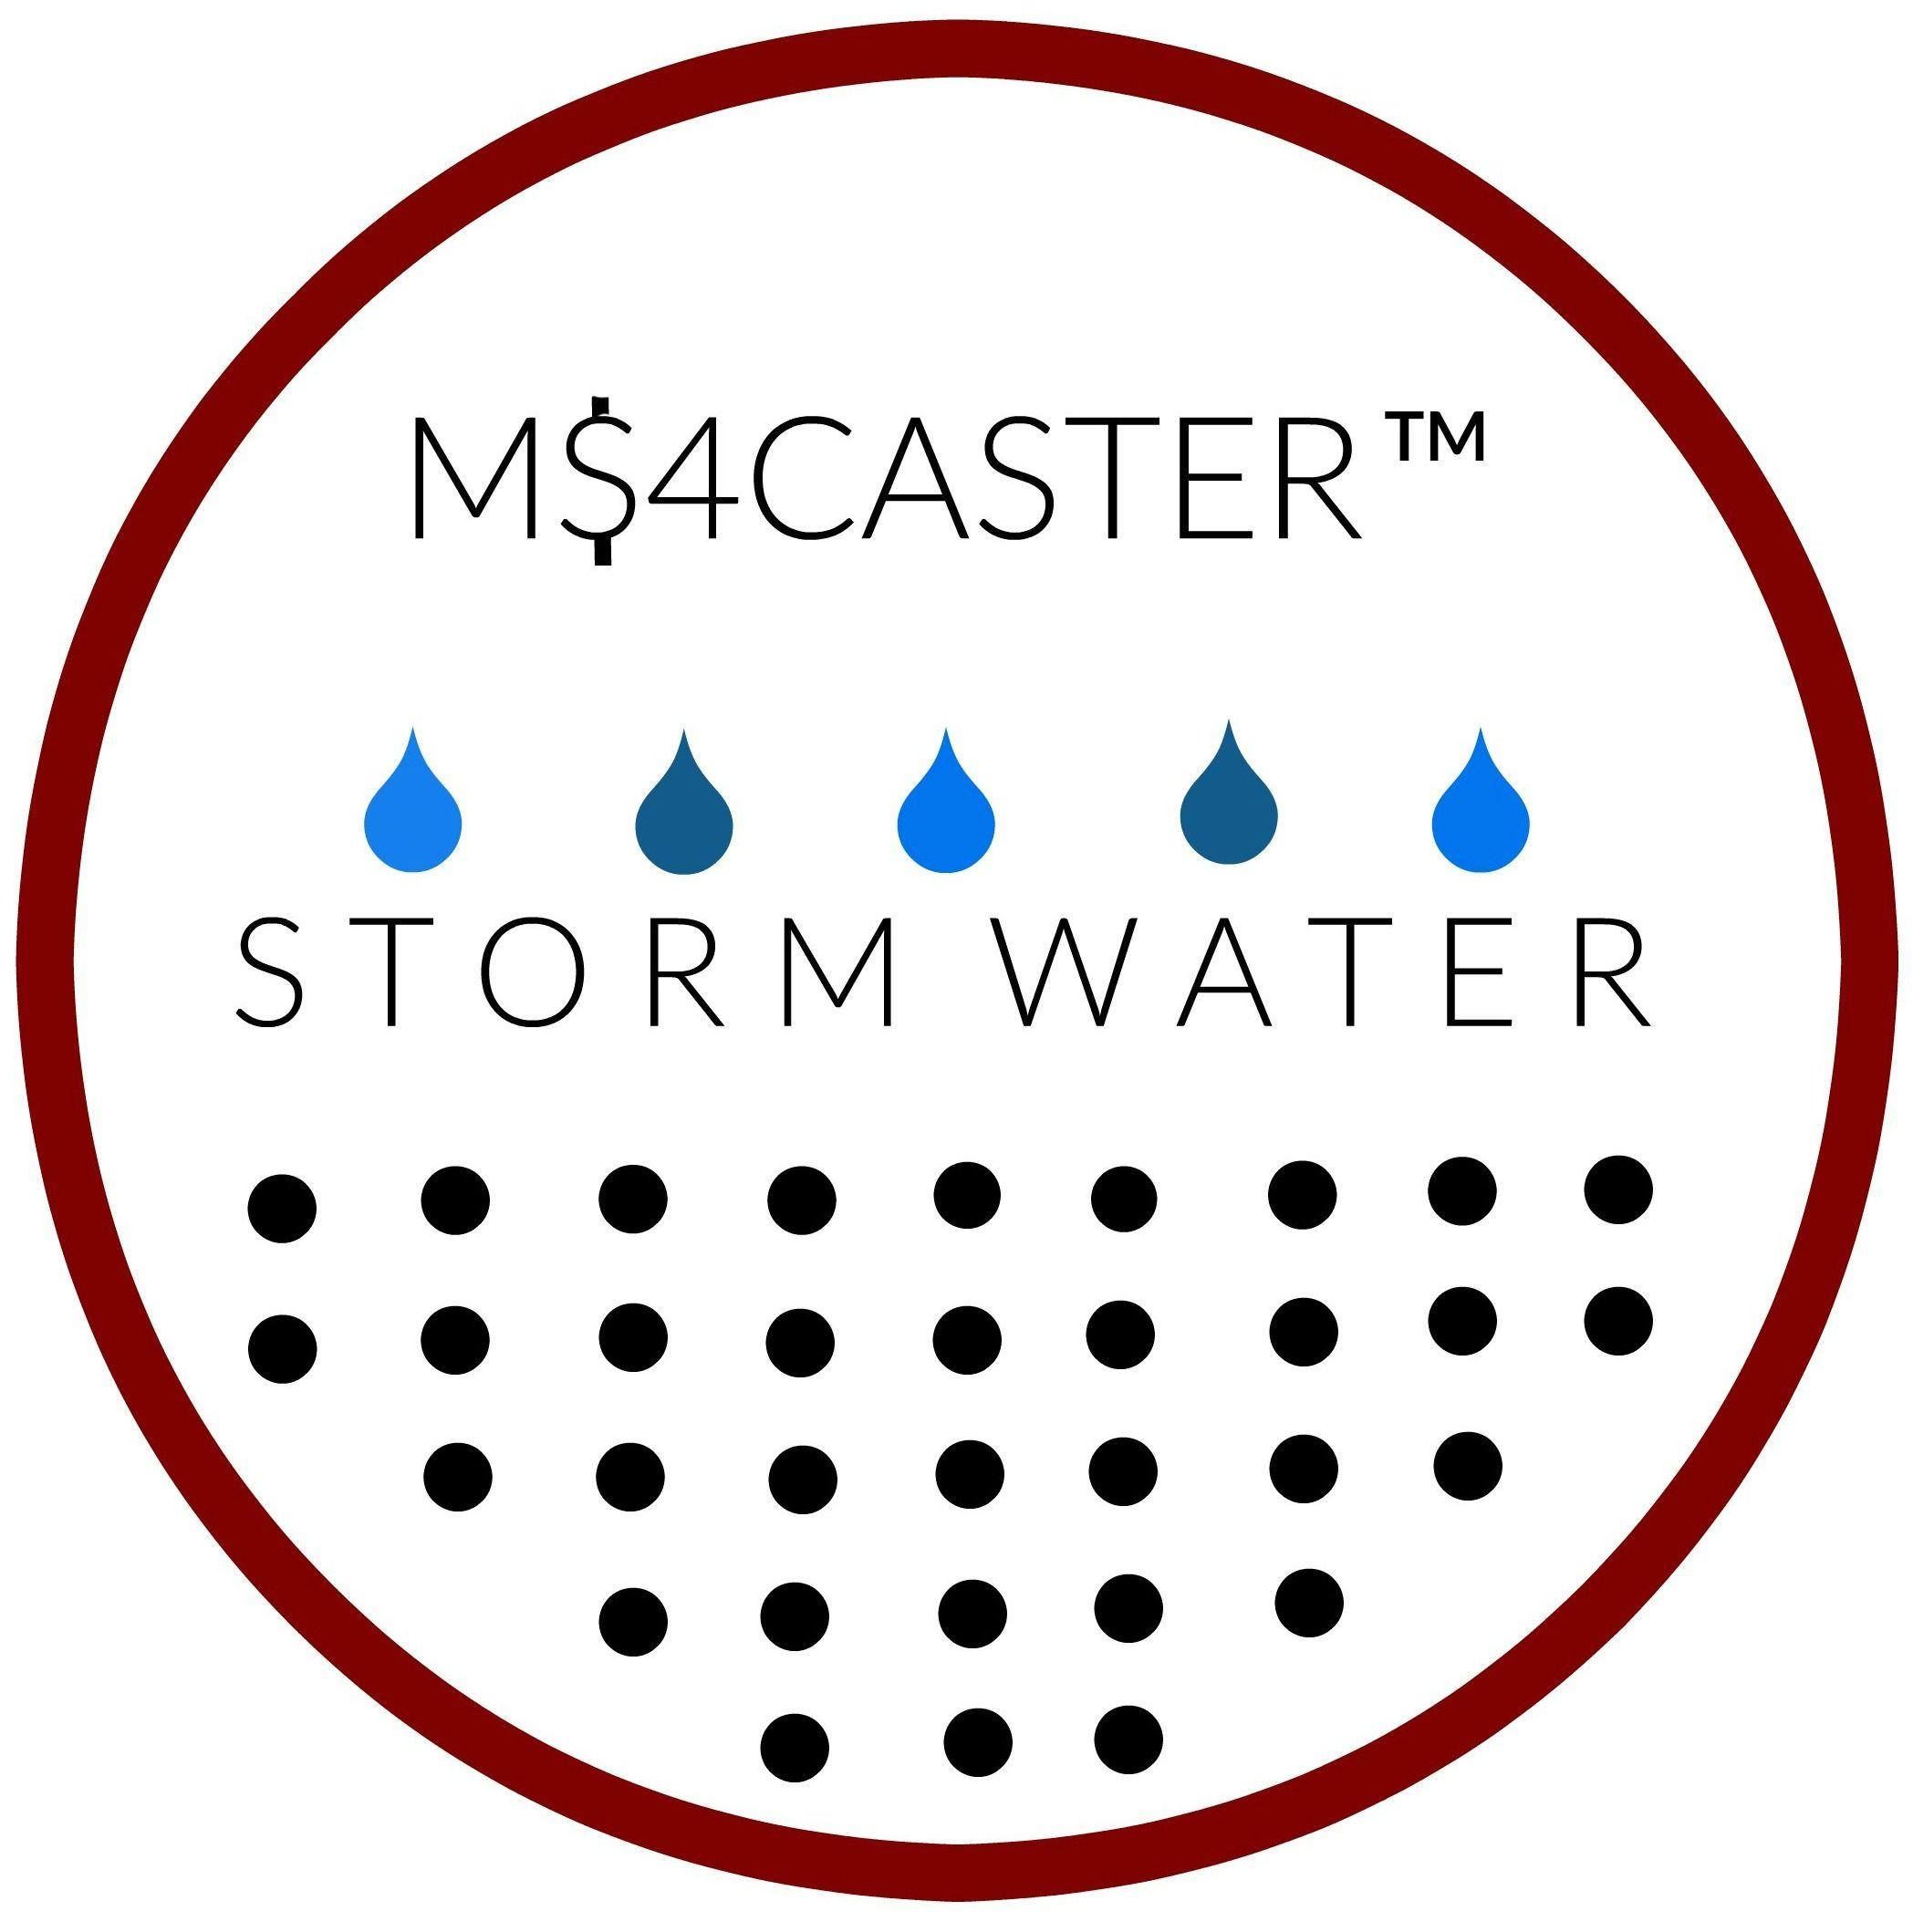 MS4 Logo - CEI's M$4CASTER